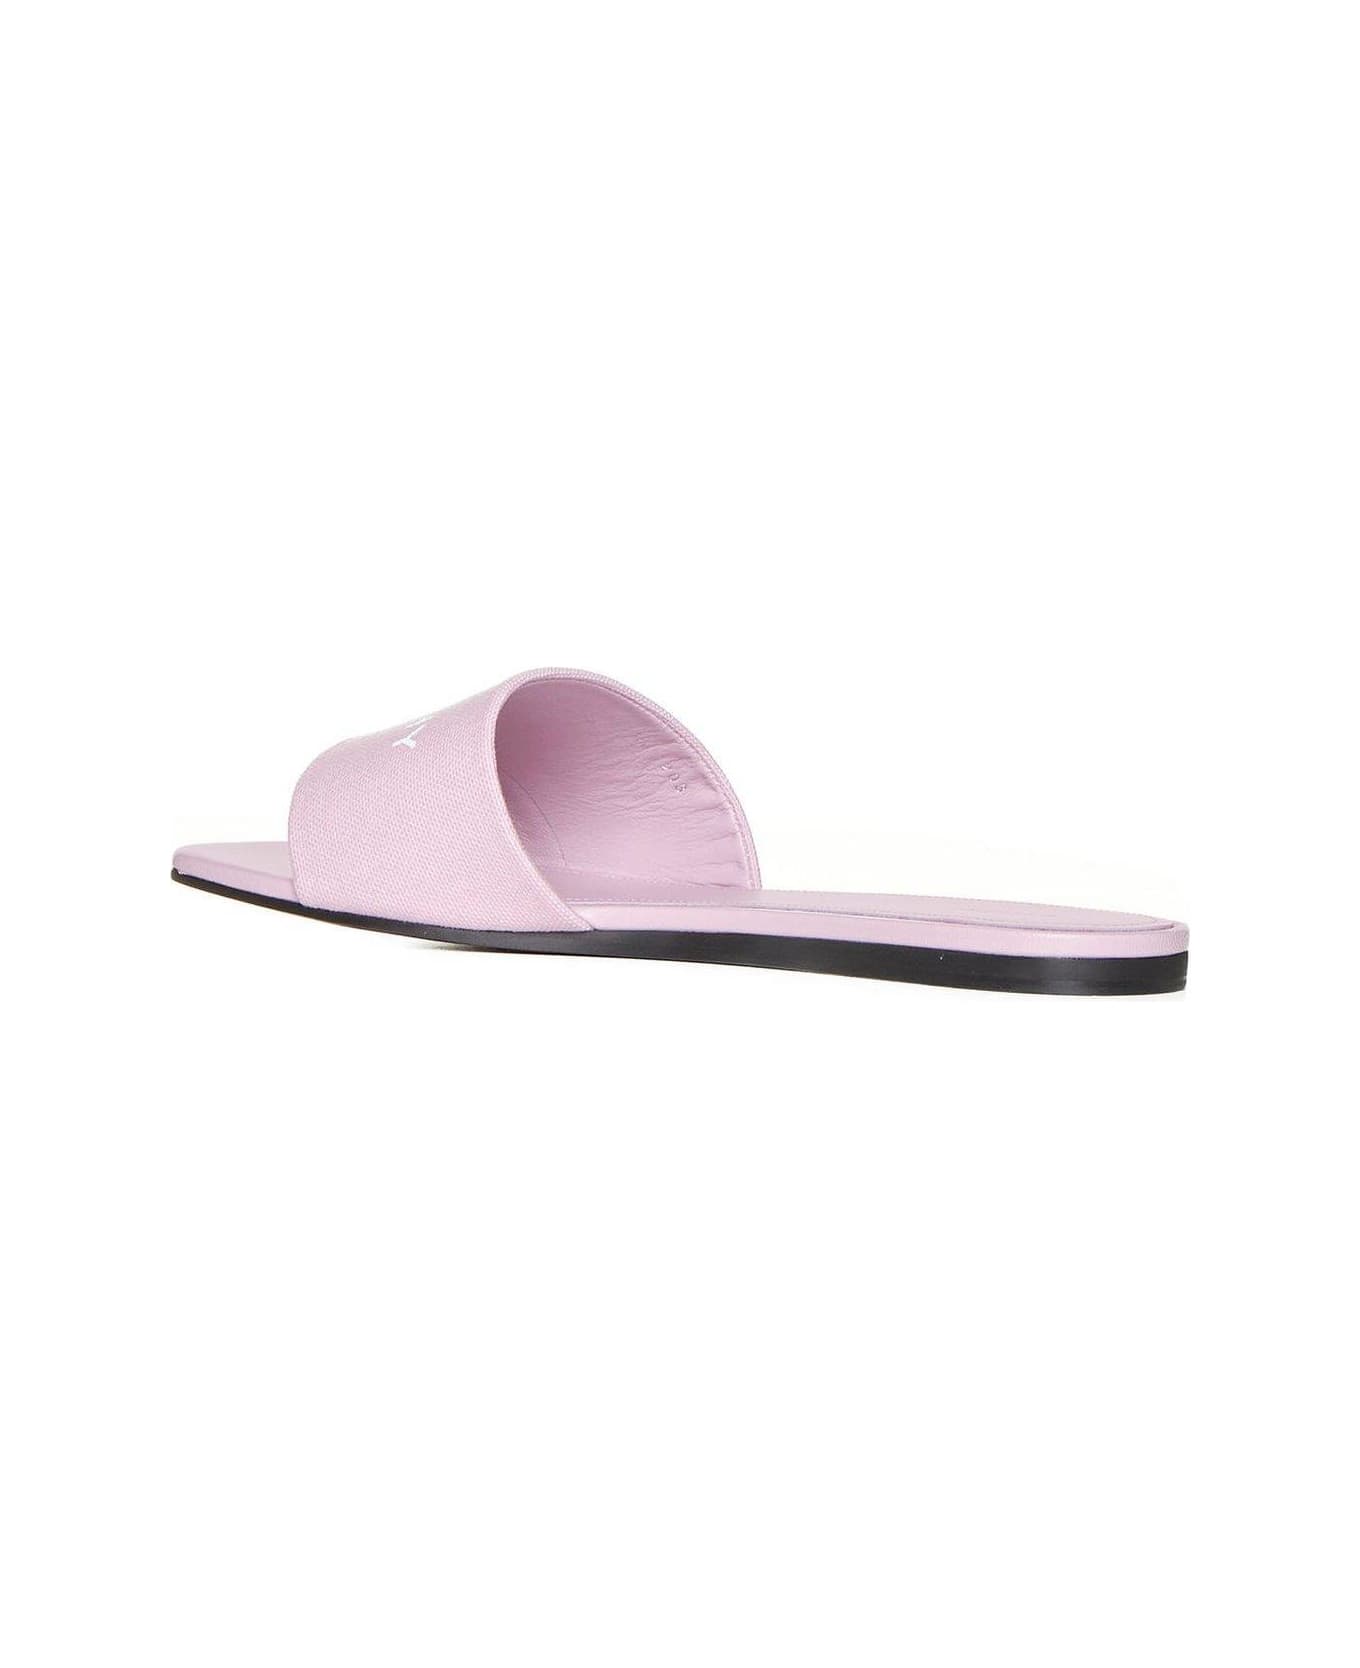 Givenchy Logo Printed Slides - Pink